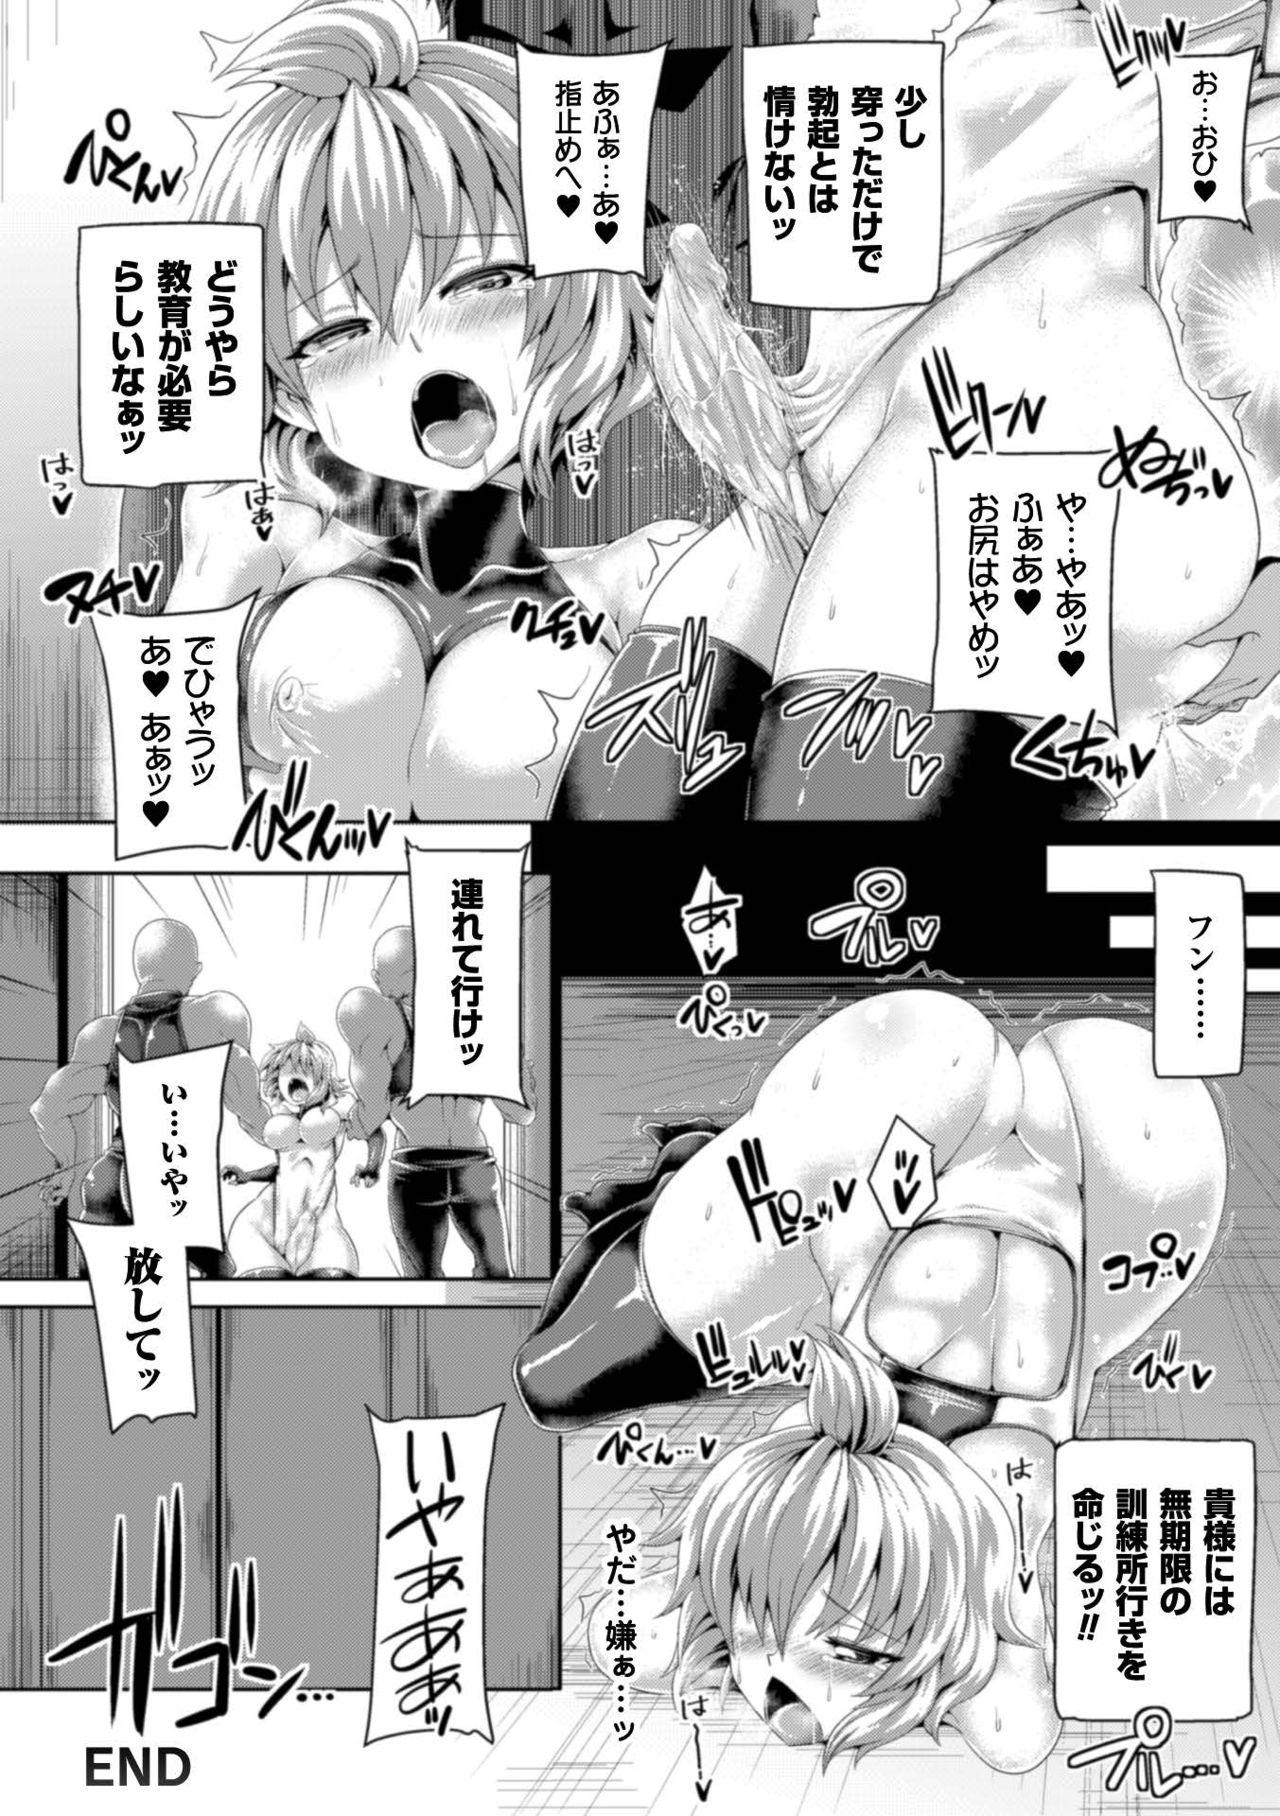 Seigi no Heroine Kangoku File Vol. 7 23